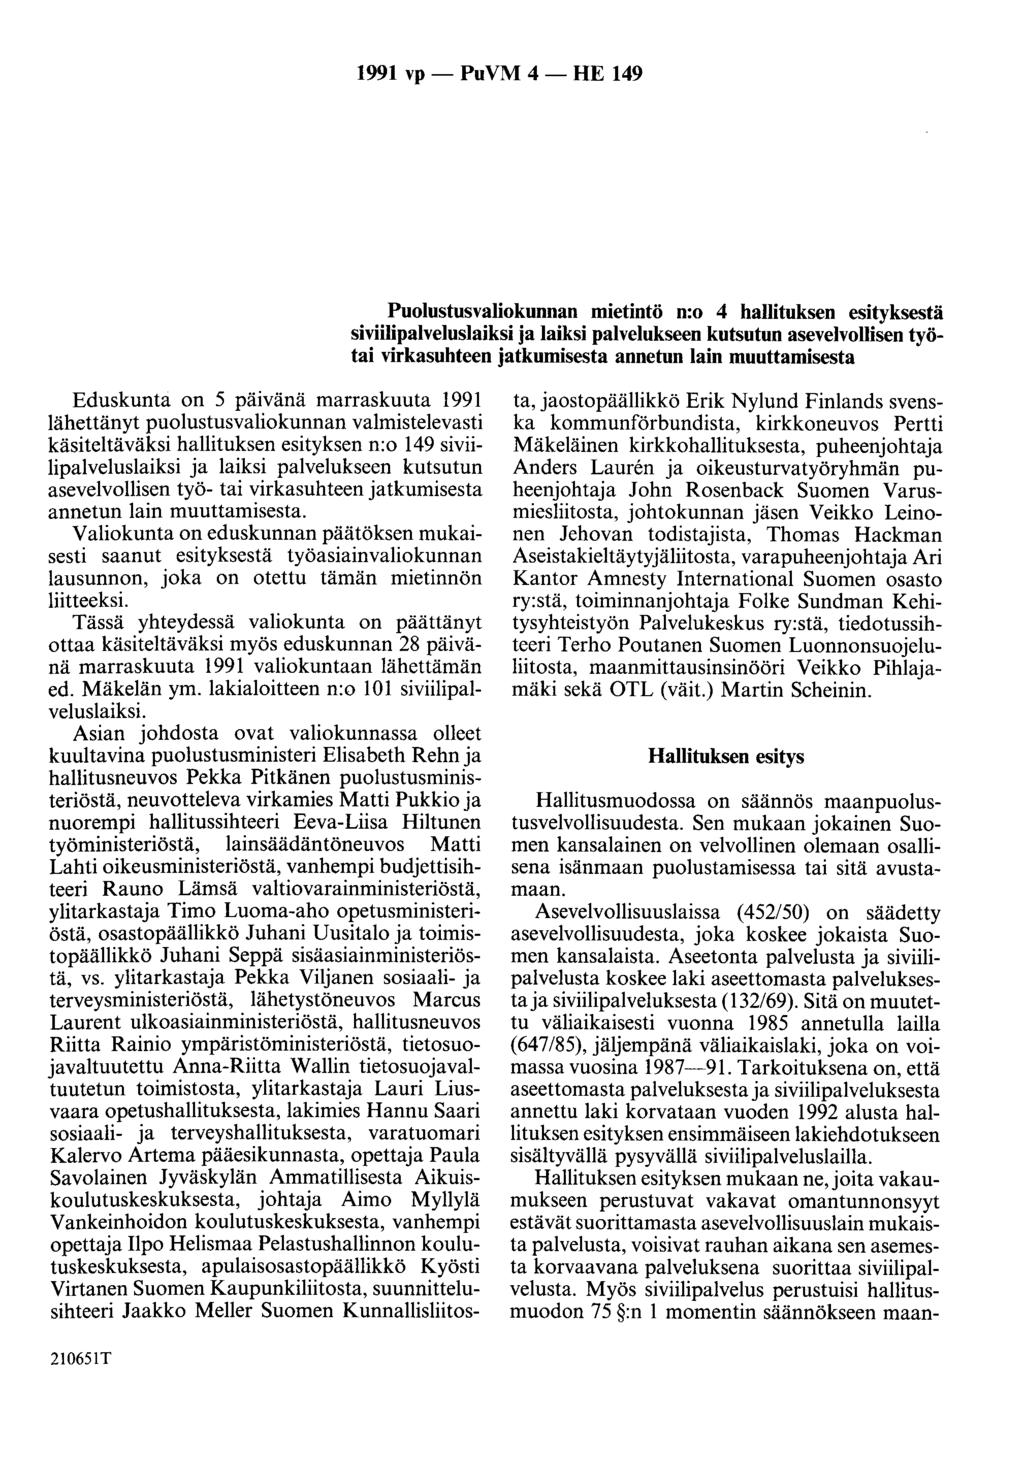 1991 vp- PuVM 4- HE 149 Puolustusvaliokunnan mietintö n:o 4 hallituksen esityksestä siviilipalveluslaiksi ja laiksi palvelukseen kutsutun asevelvollisen työtai virkasuhteen jatkumisesta annetun lain